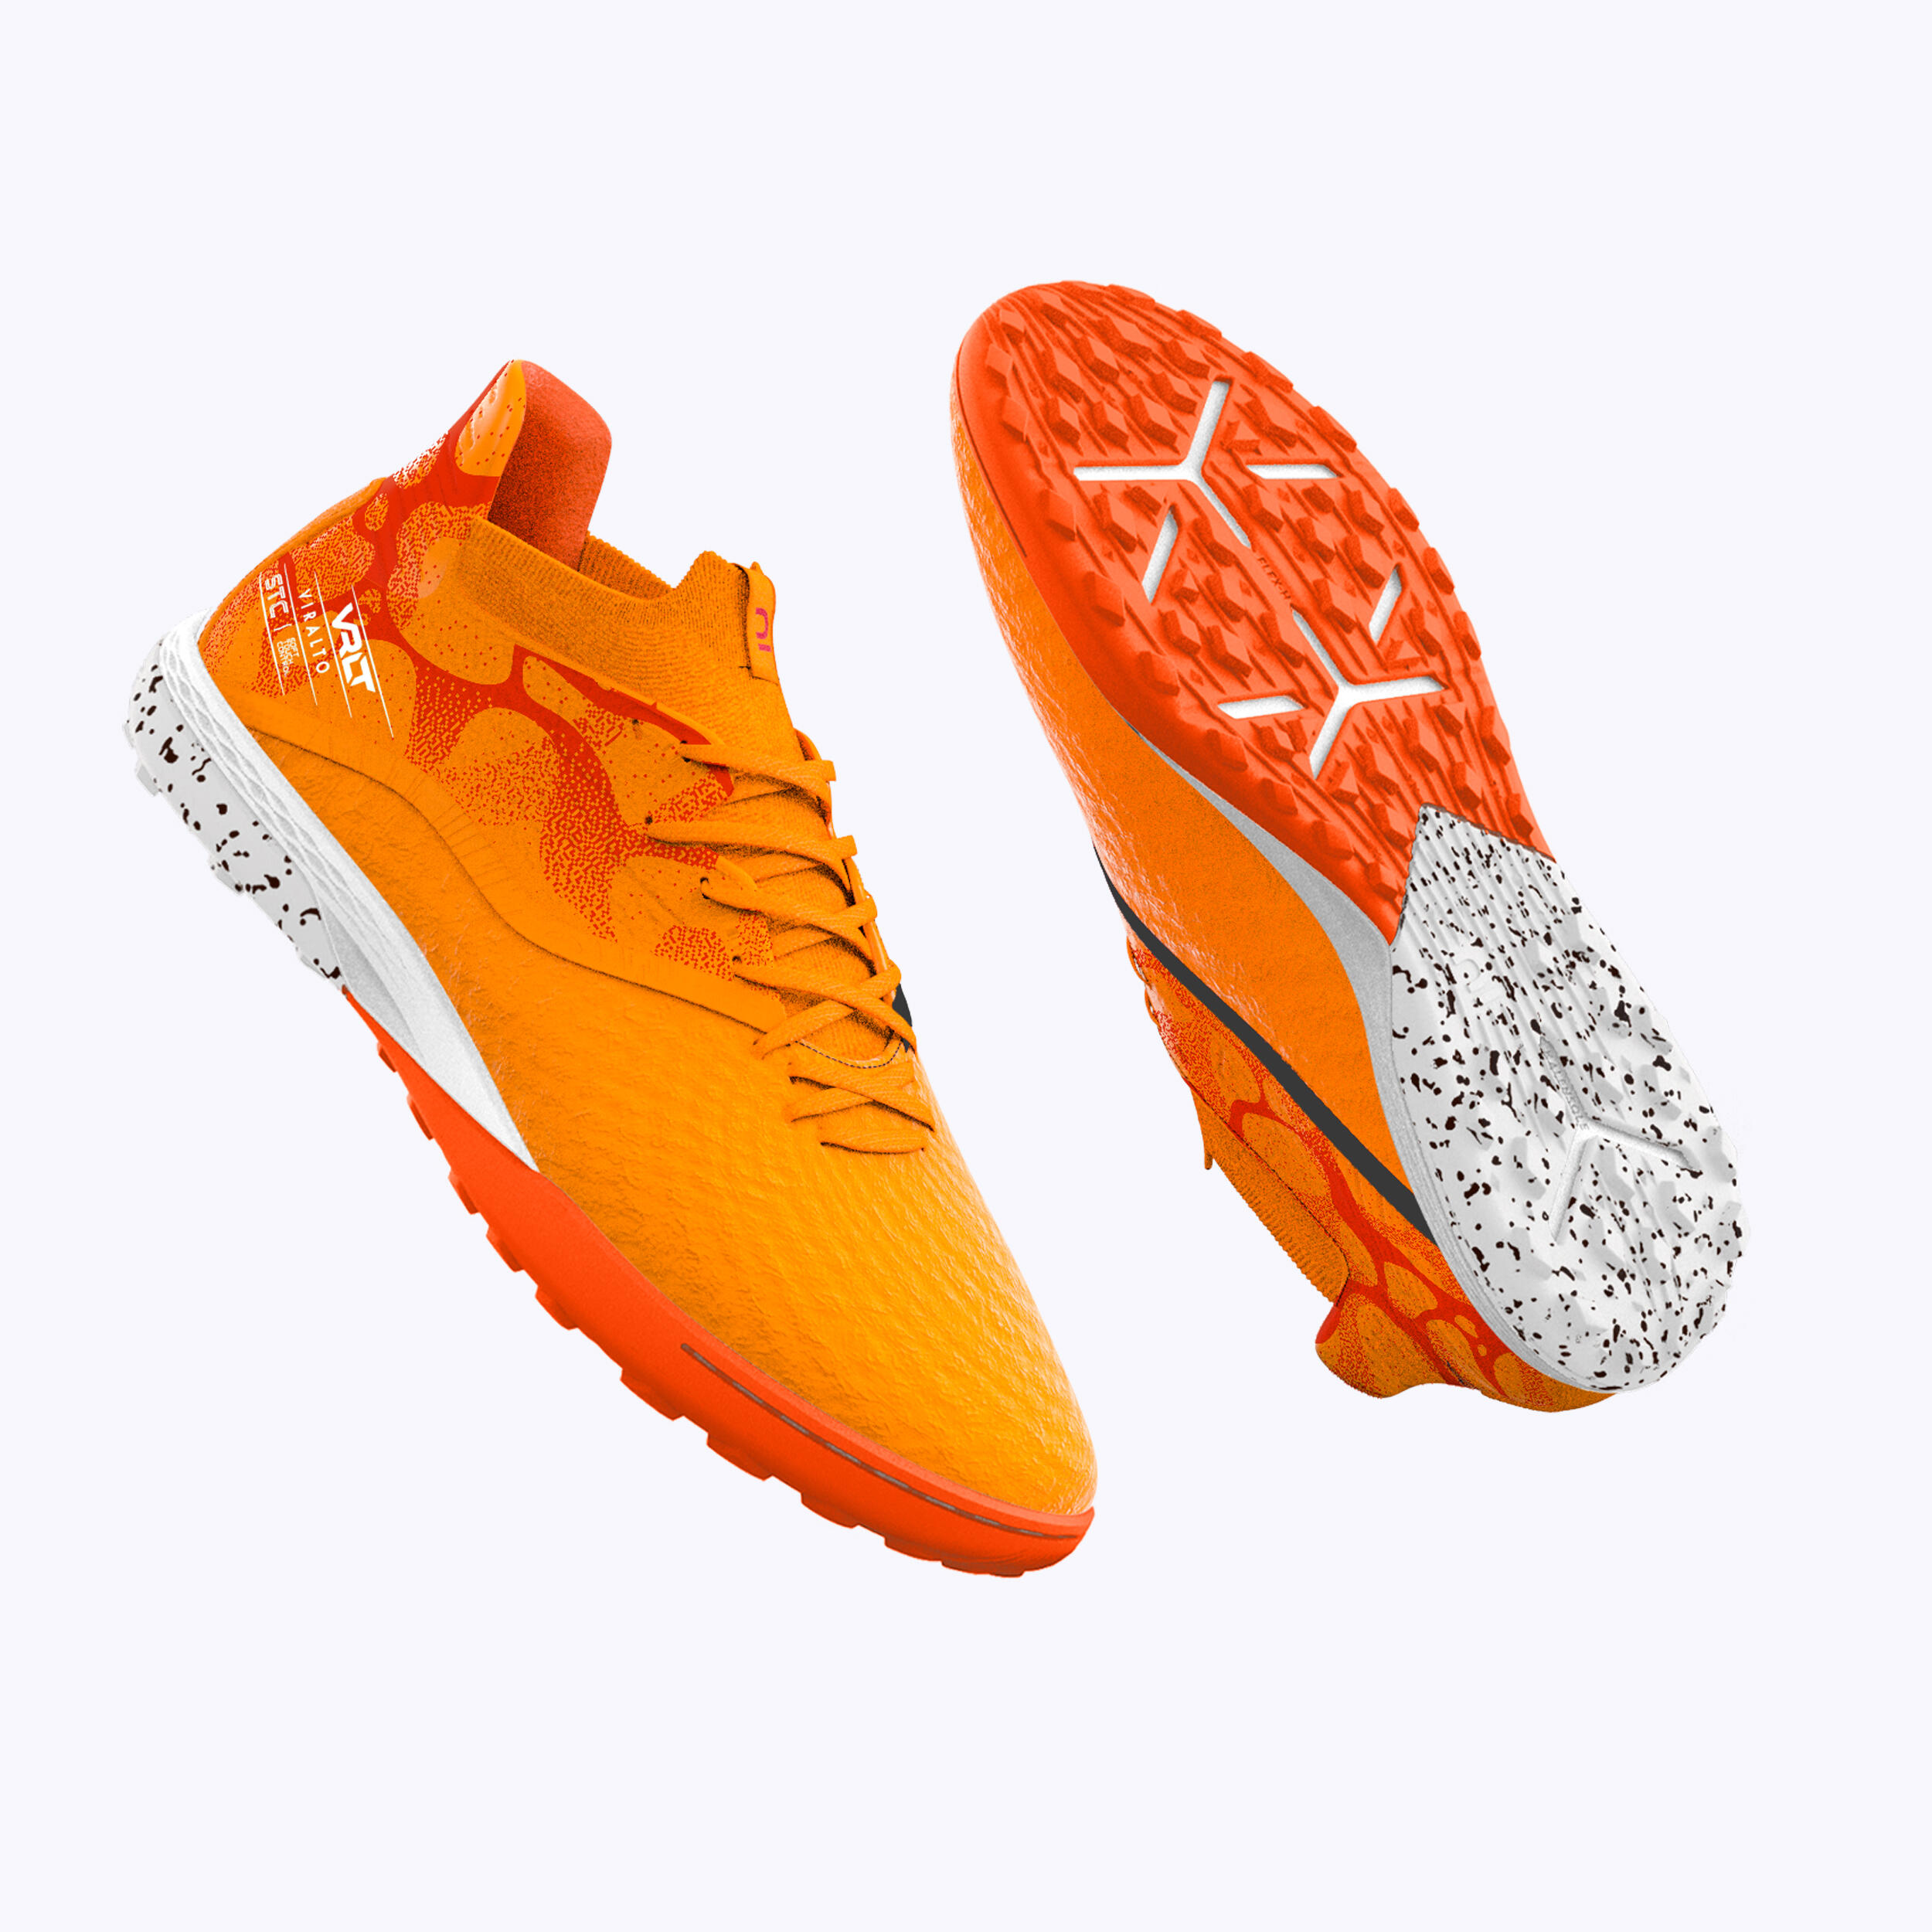 KIPSTA Football Boots Viralto III 3D AirMesh Turf TF - Orange